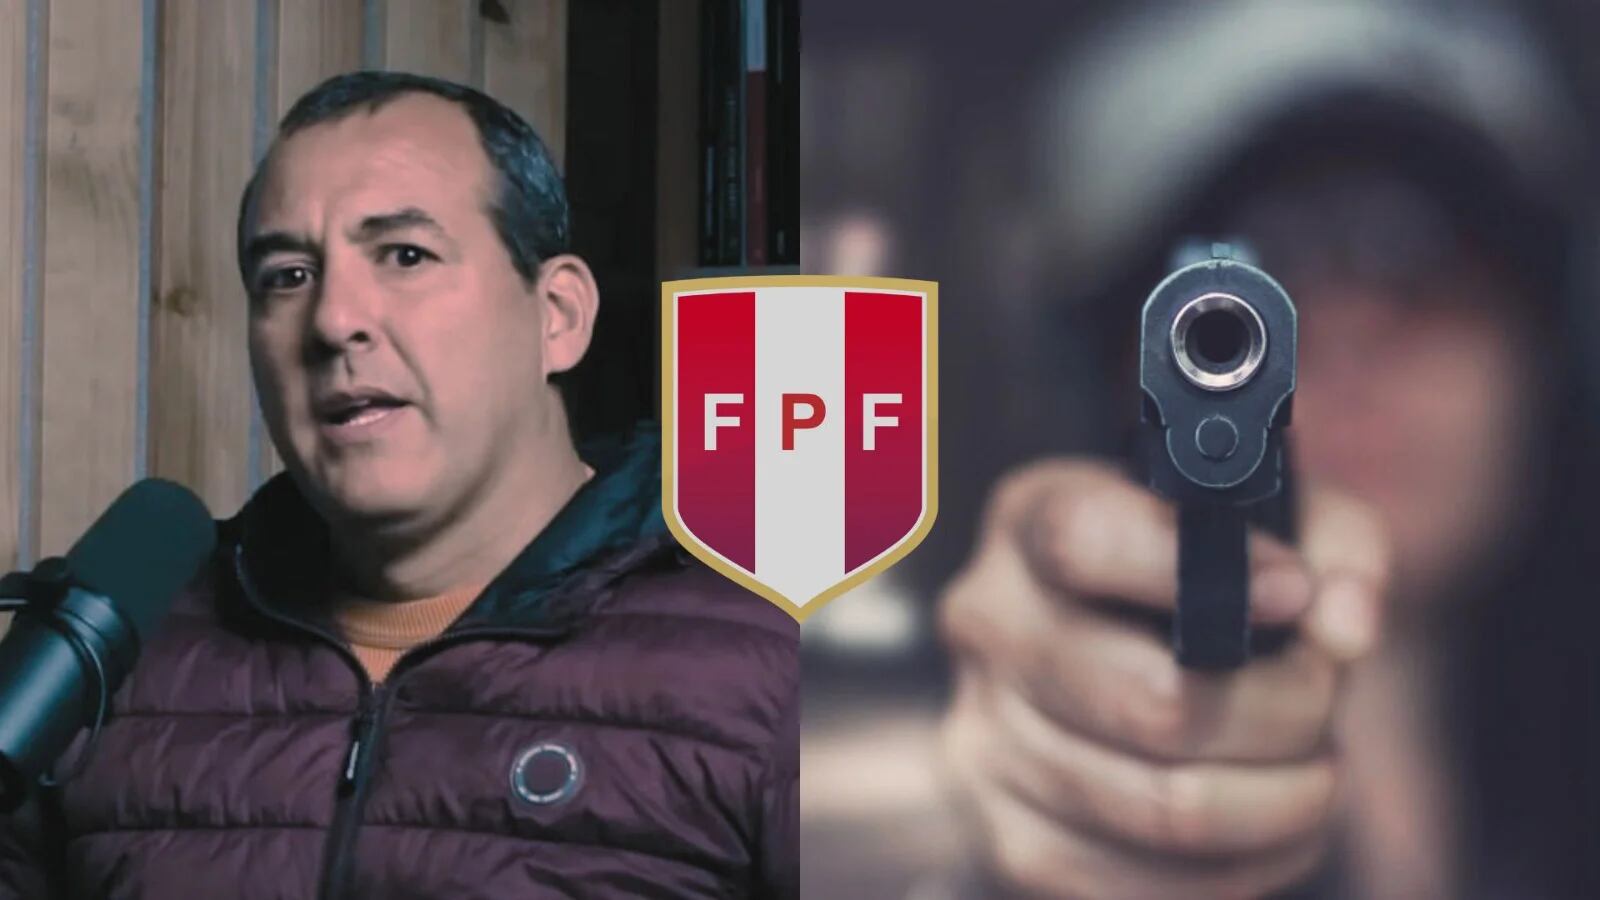 Roberto Silva, presidente de Safap, confesó que un jugador fue amenazado por su club con una pistola para amañar un partido en el fútbol peruano.